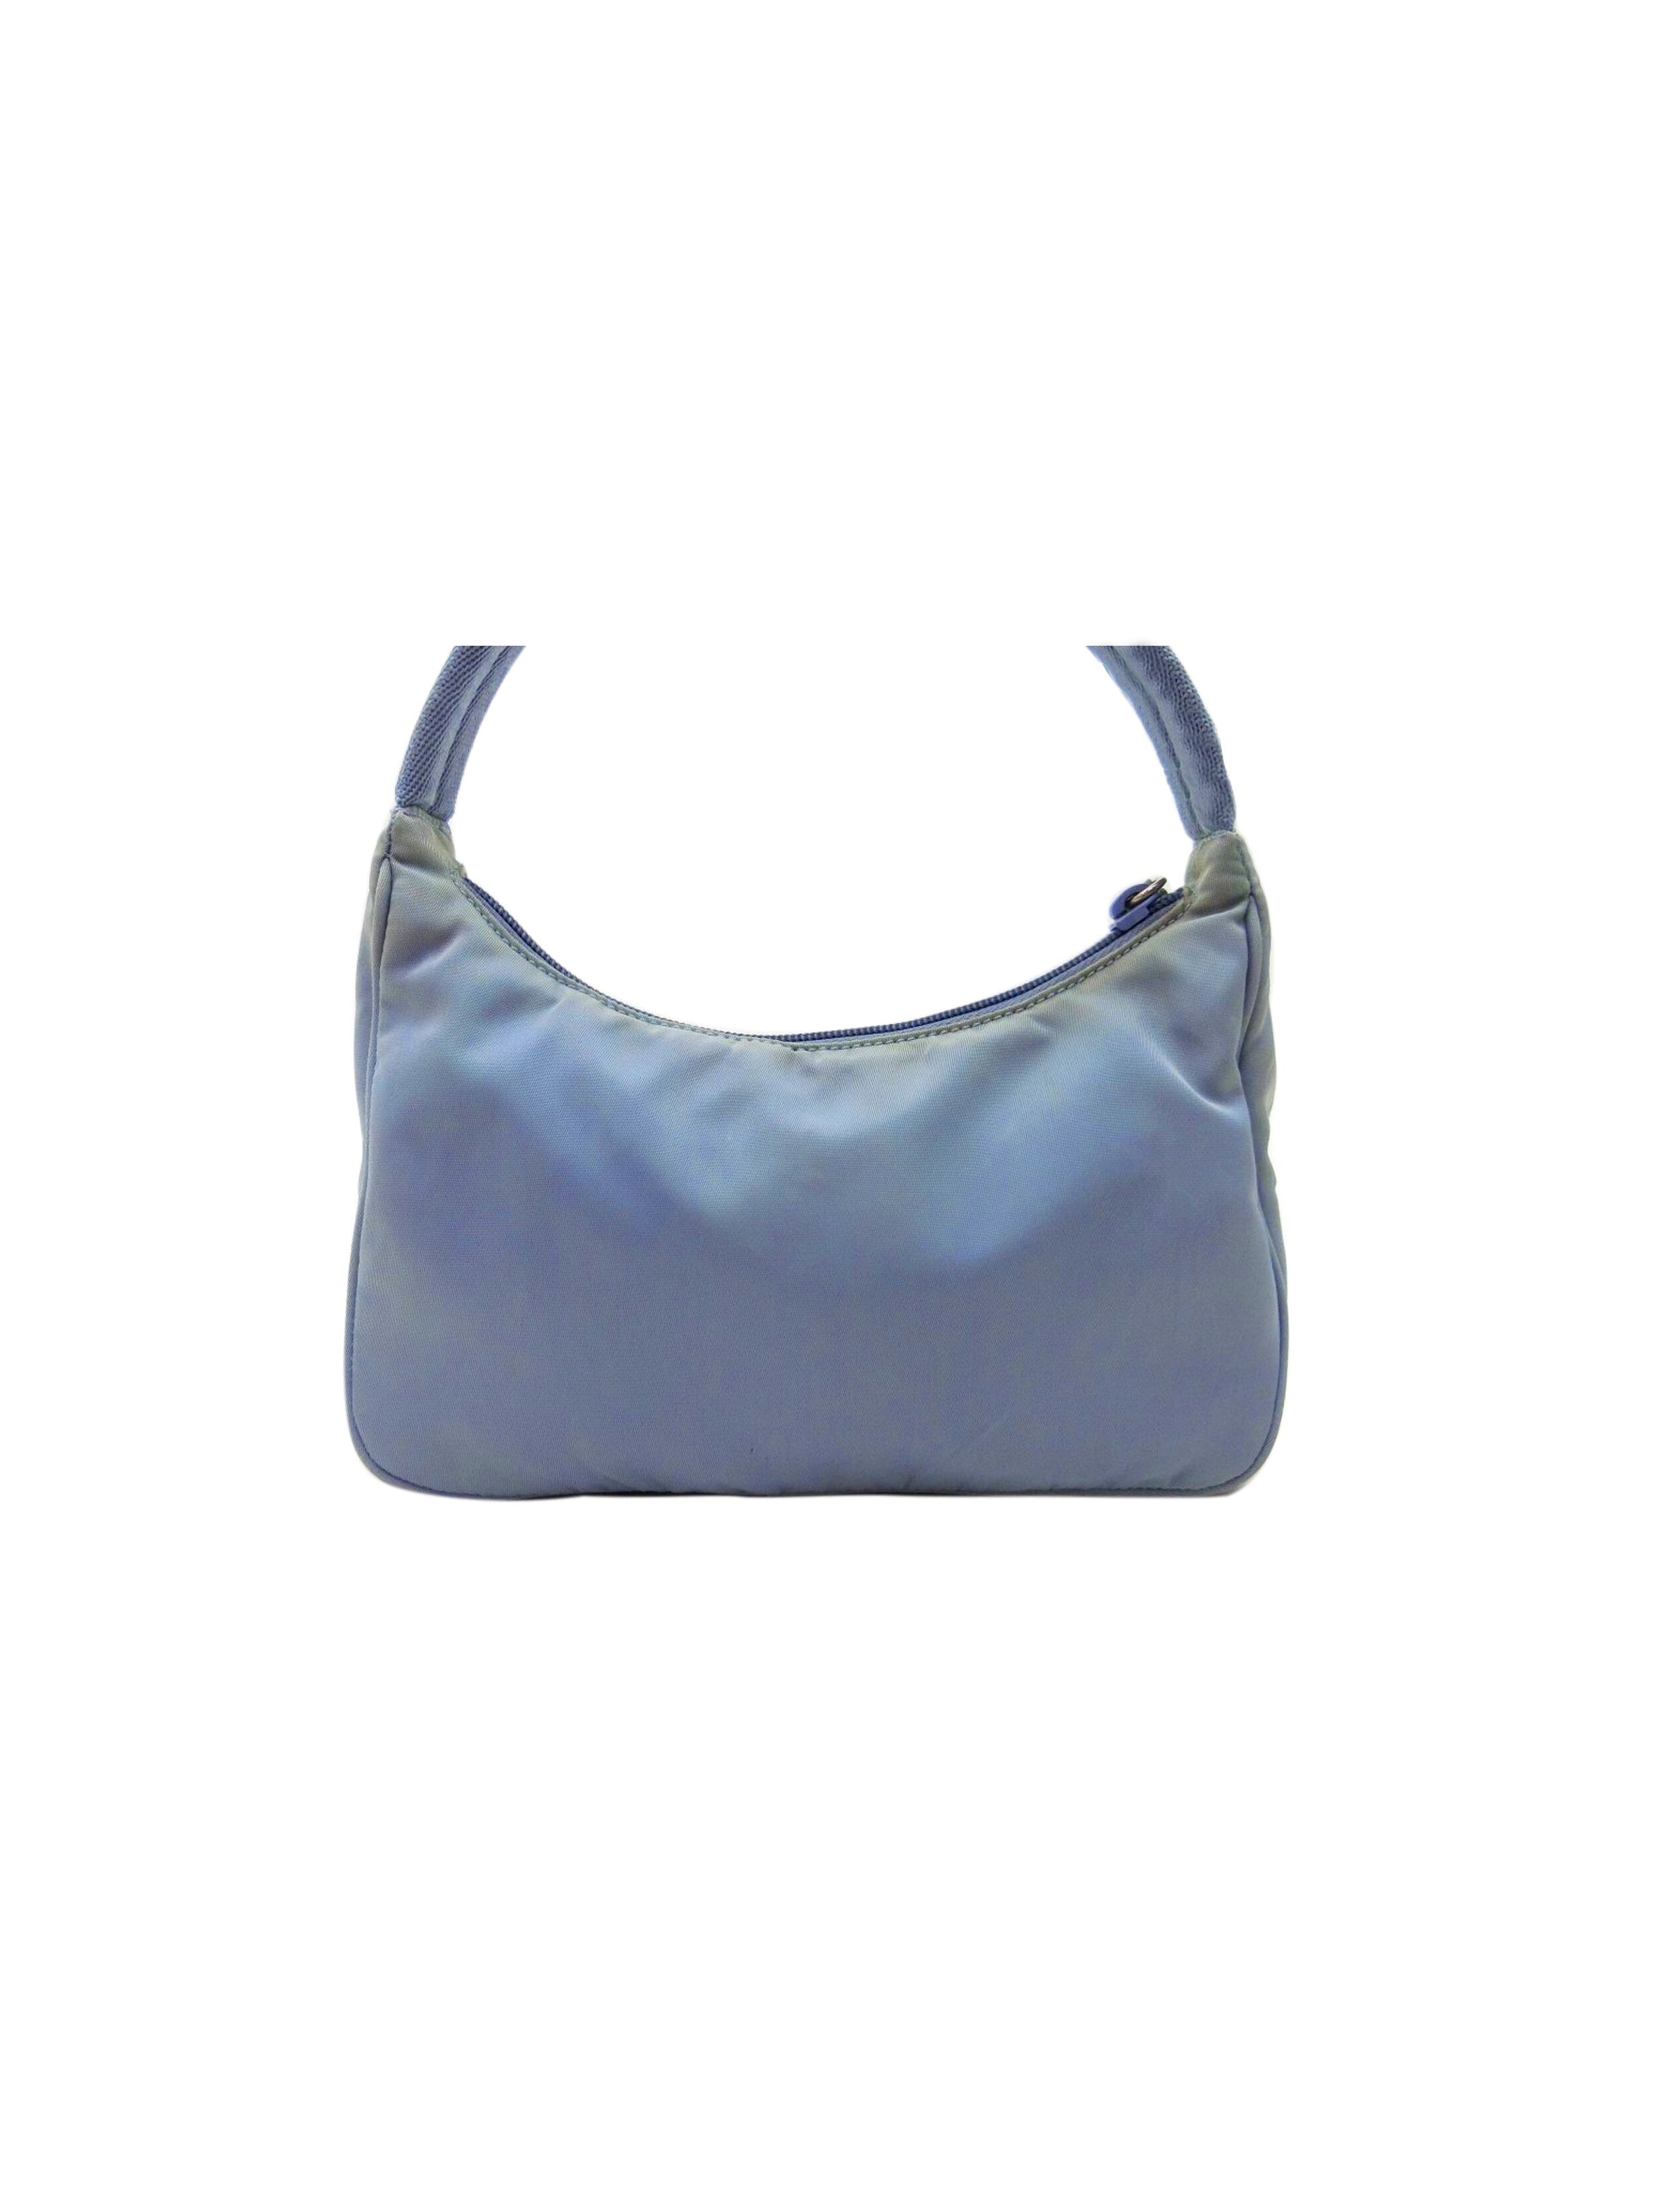 Prada 2000s Light Blue Tessuto Handbag